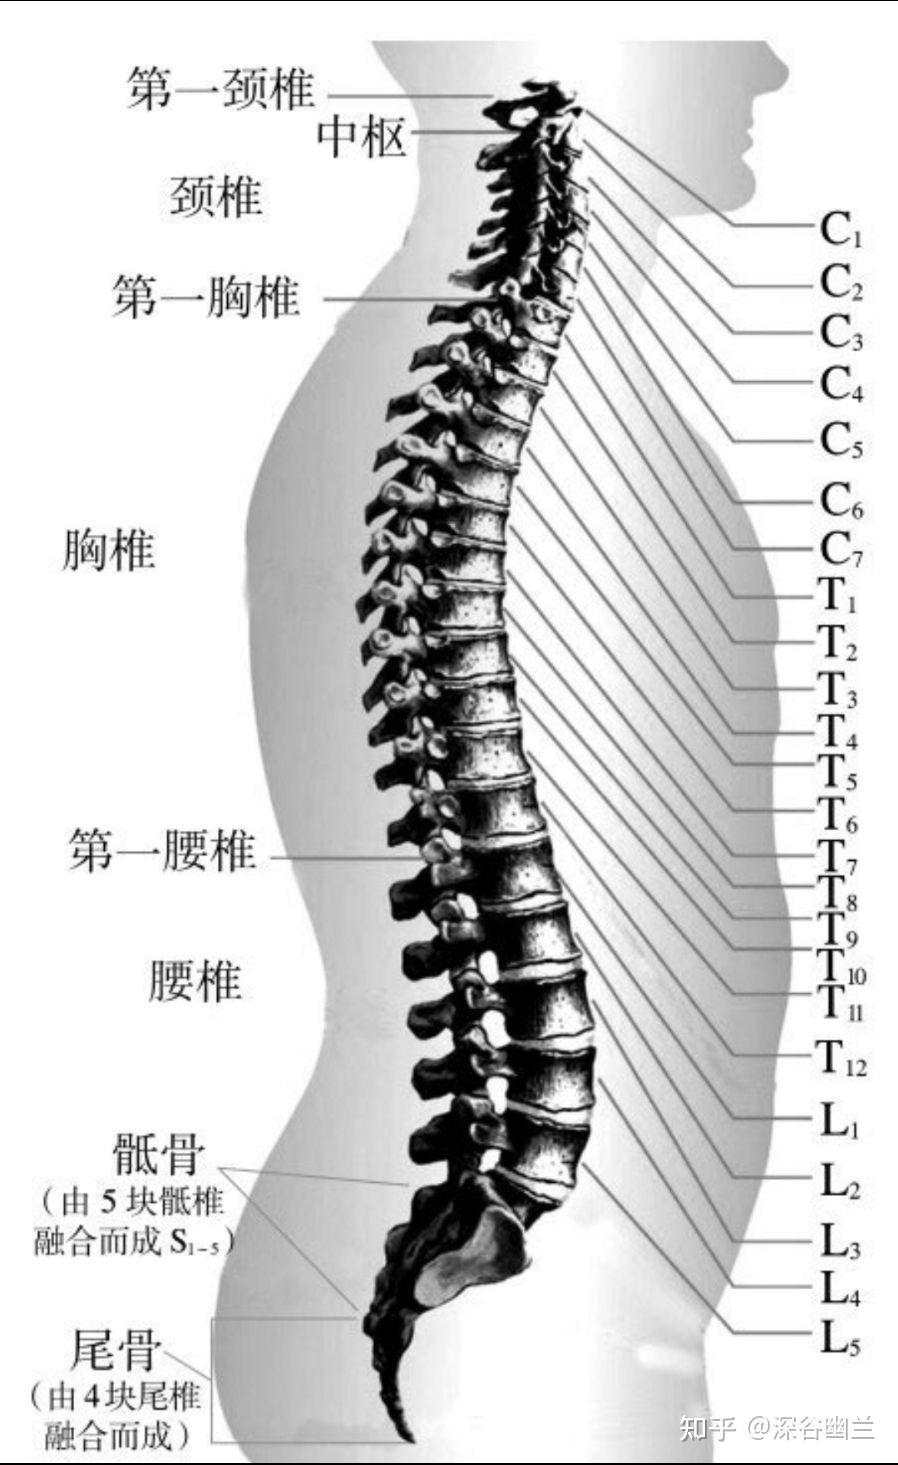 由于骶骨系由5块骶椎构成,尾骨由3